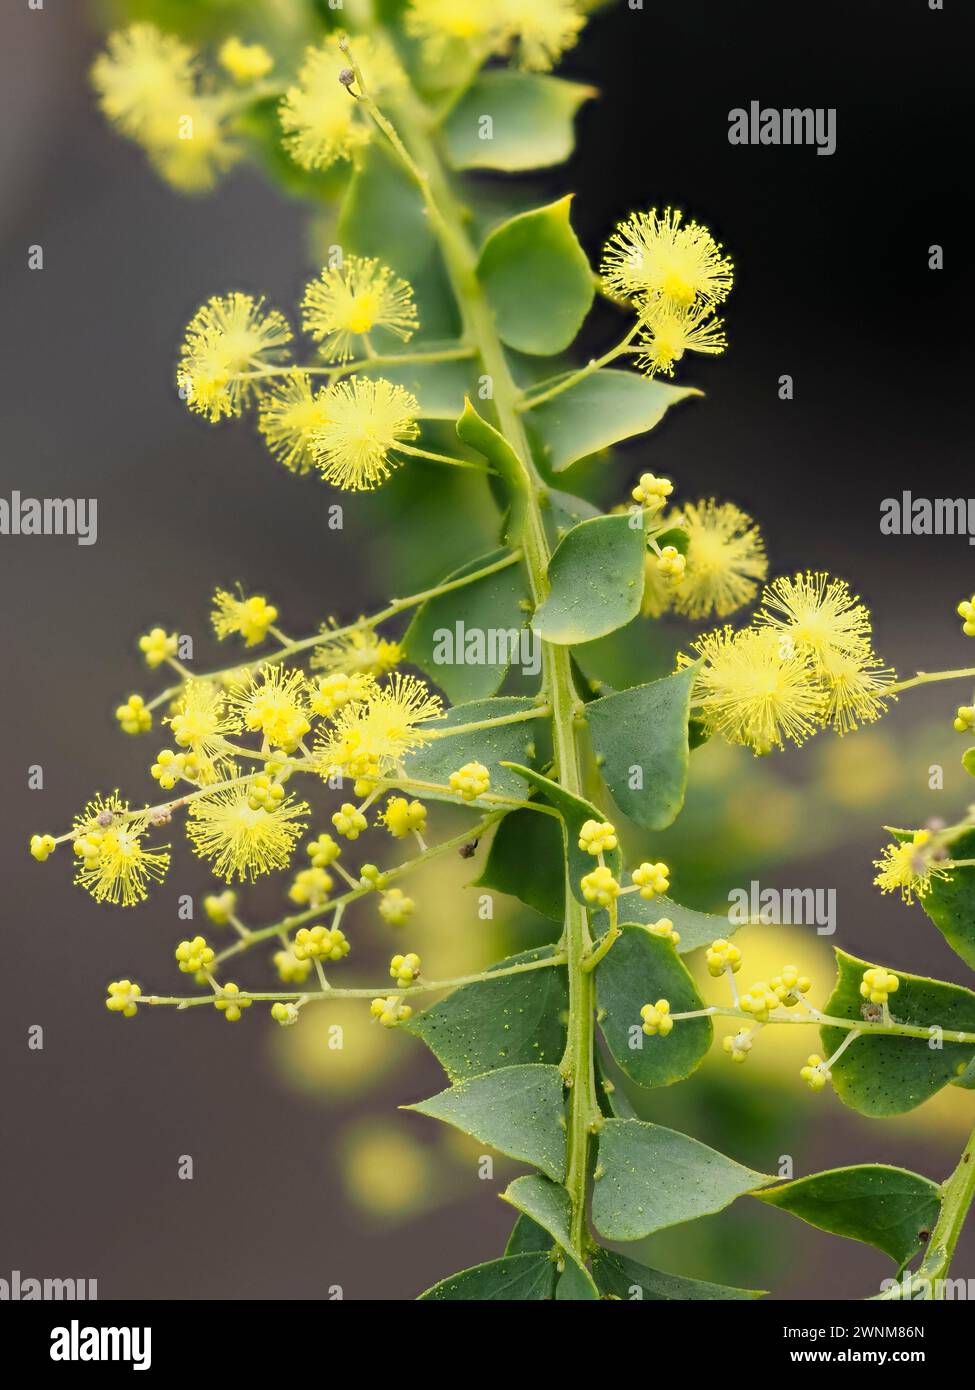 Powderpuff gelbe Blüten der Australian Ovens wattle, Acacia pravissima, ein halbharter immergrüner Sträucher mit silbrigen Phylloden Stockfoto